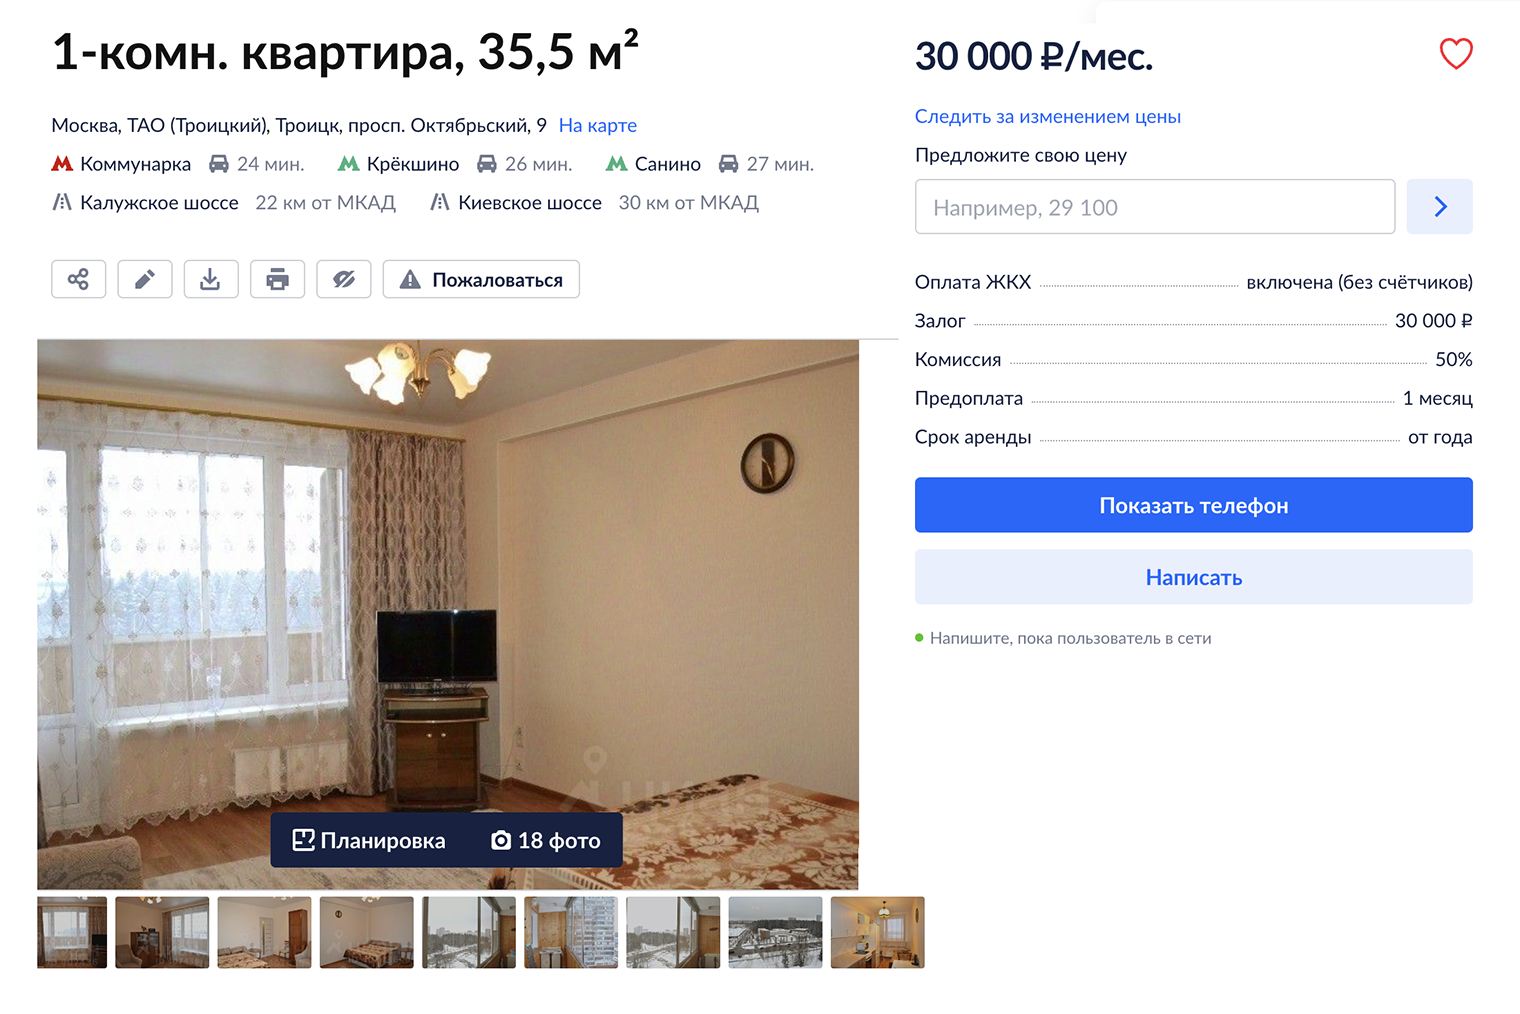 Квартира расположена в кирпичном доме недалеко от северного выезда из города. По⁠-⁠моему, хороший баланс цены и качества. Источник: cian.ru